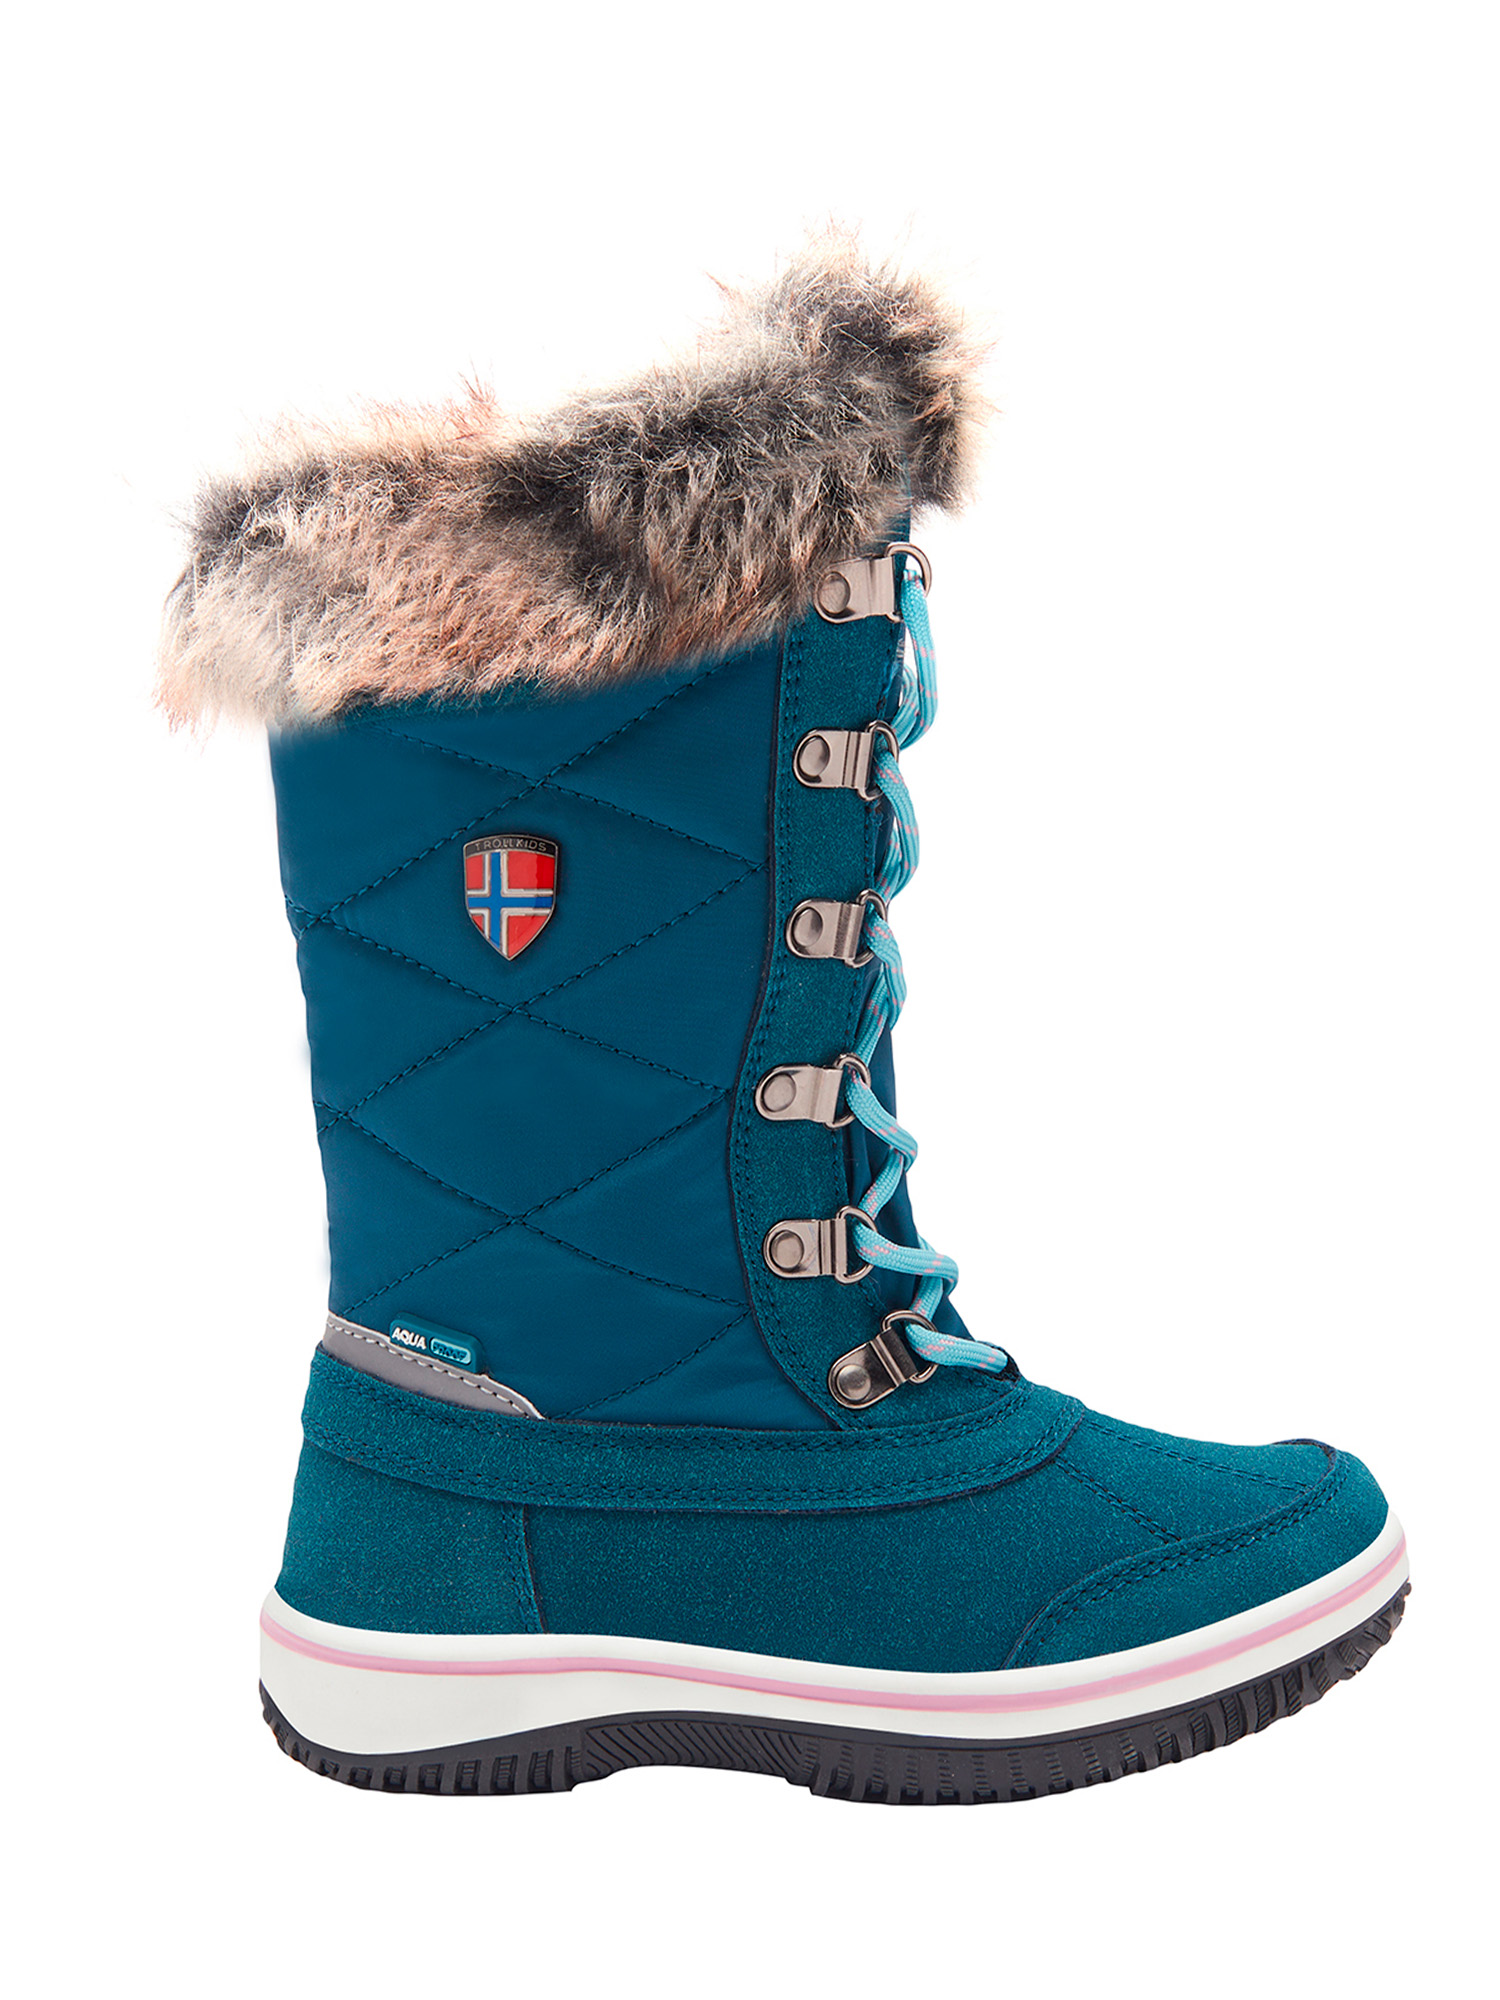 Ботинки Trollkids Girls Holmenkollen Snow Boots, голубой, 27